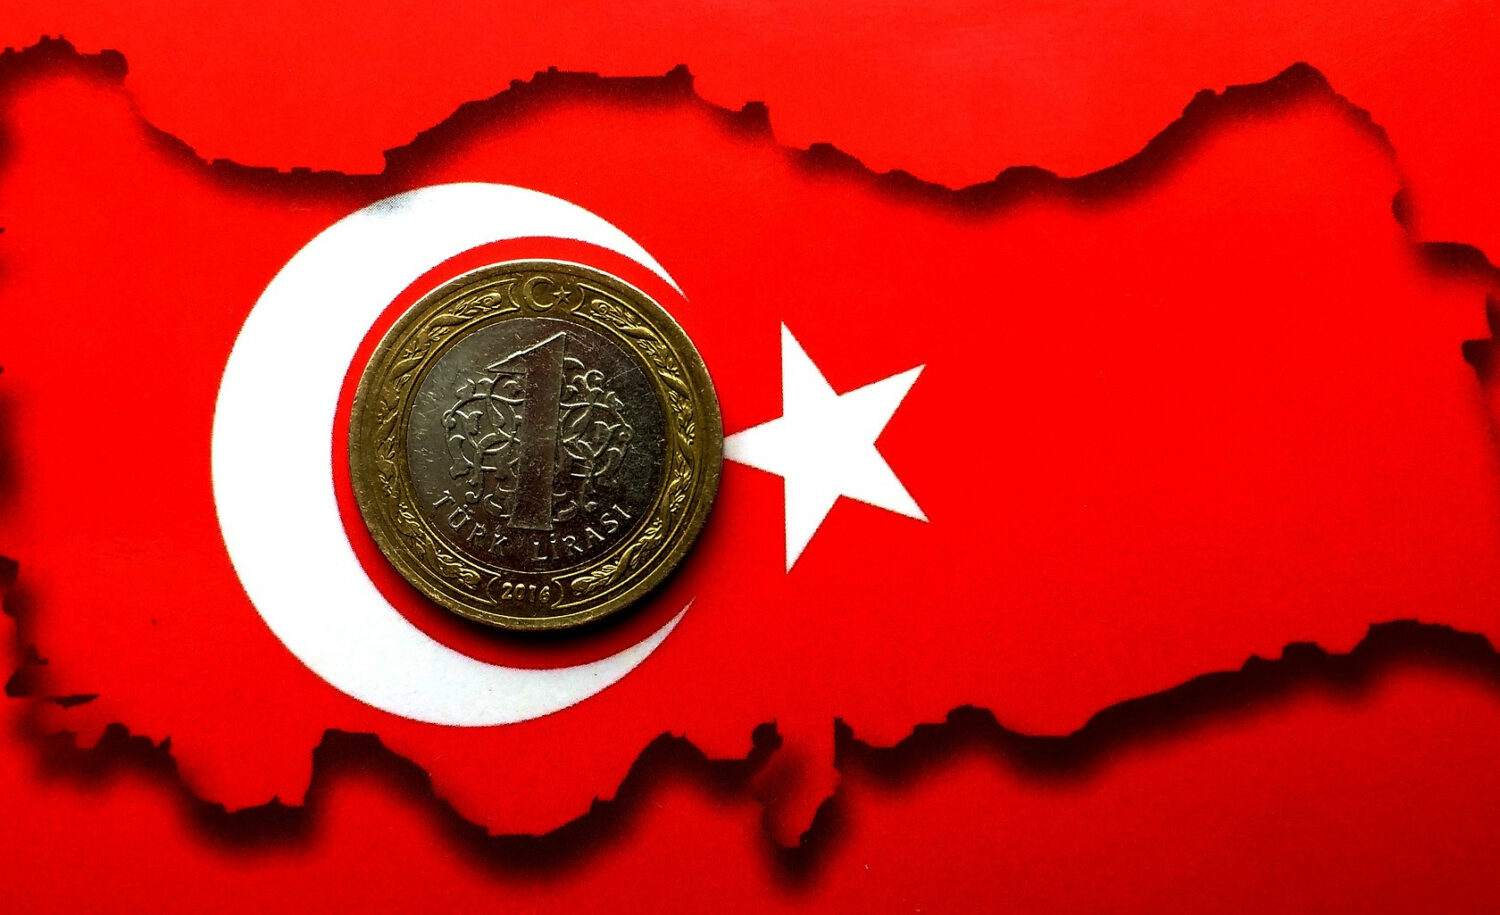 Τουρκία: Κραχ στη λίρα - Αναστολή σε μετοχές, ομόλογα, repos